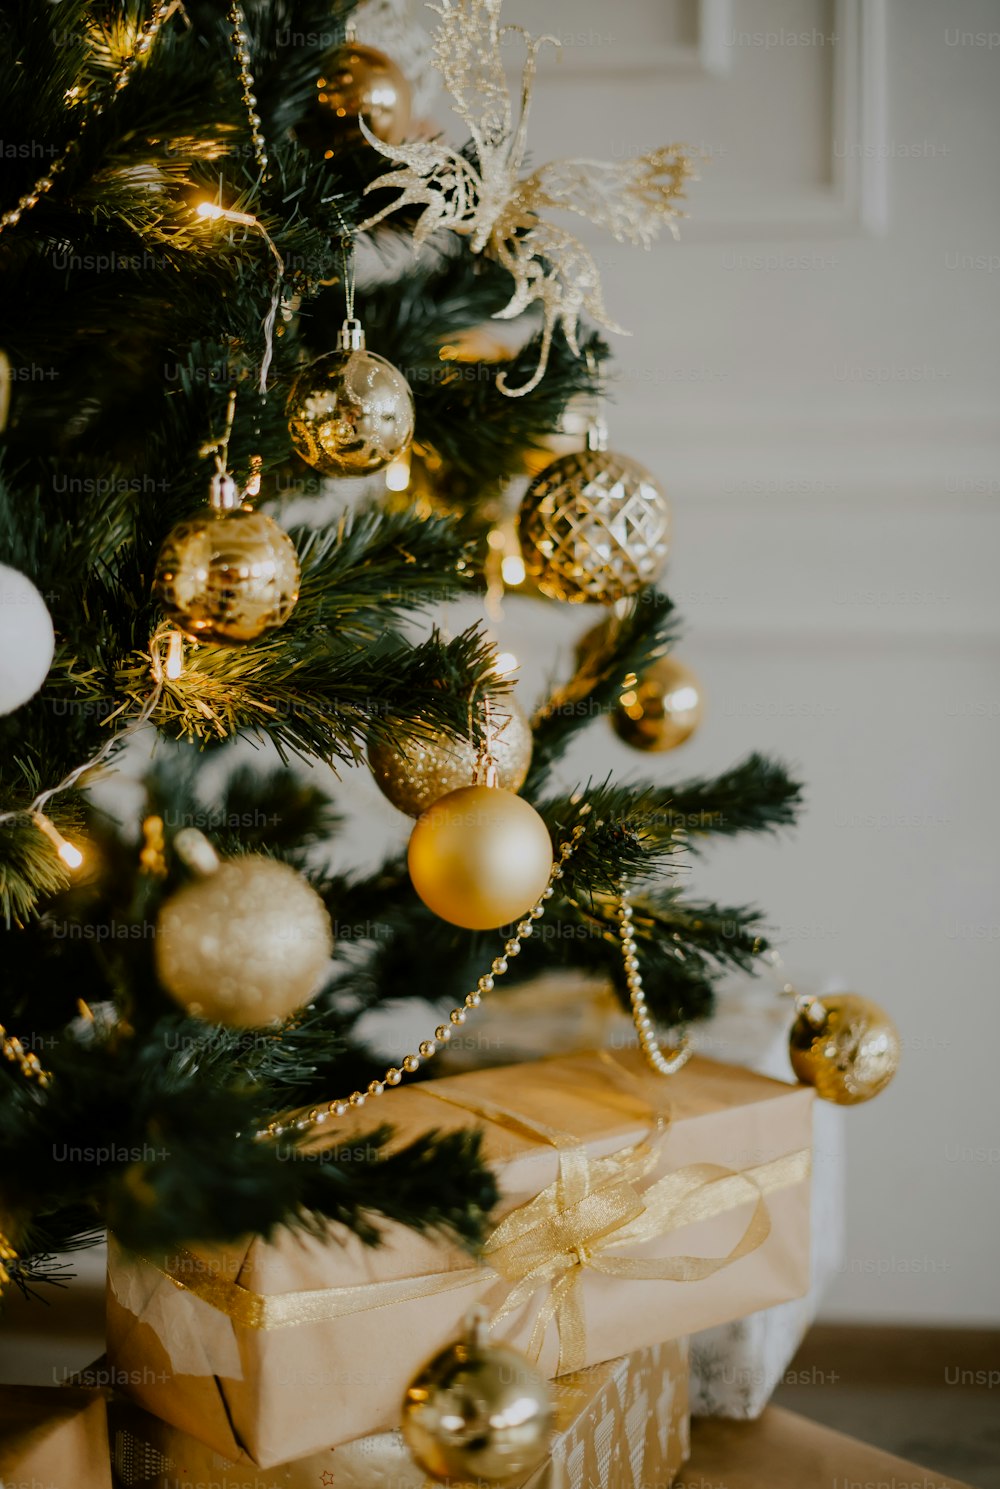 ein kleiner Weihnachtsbaum mit Geschenken darunter